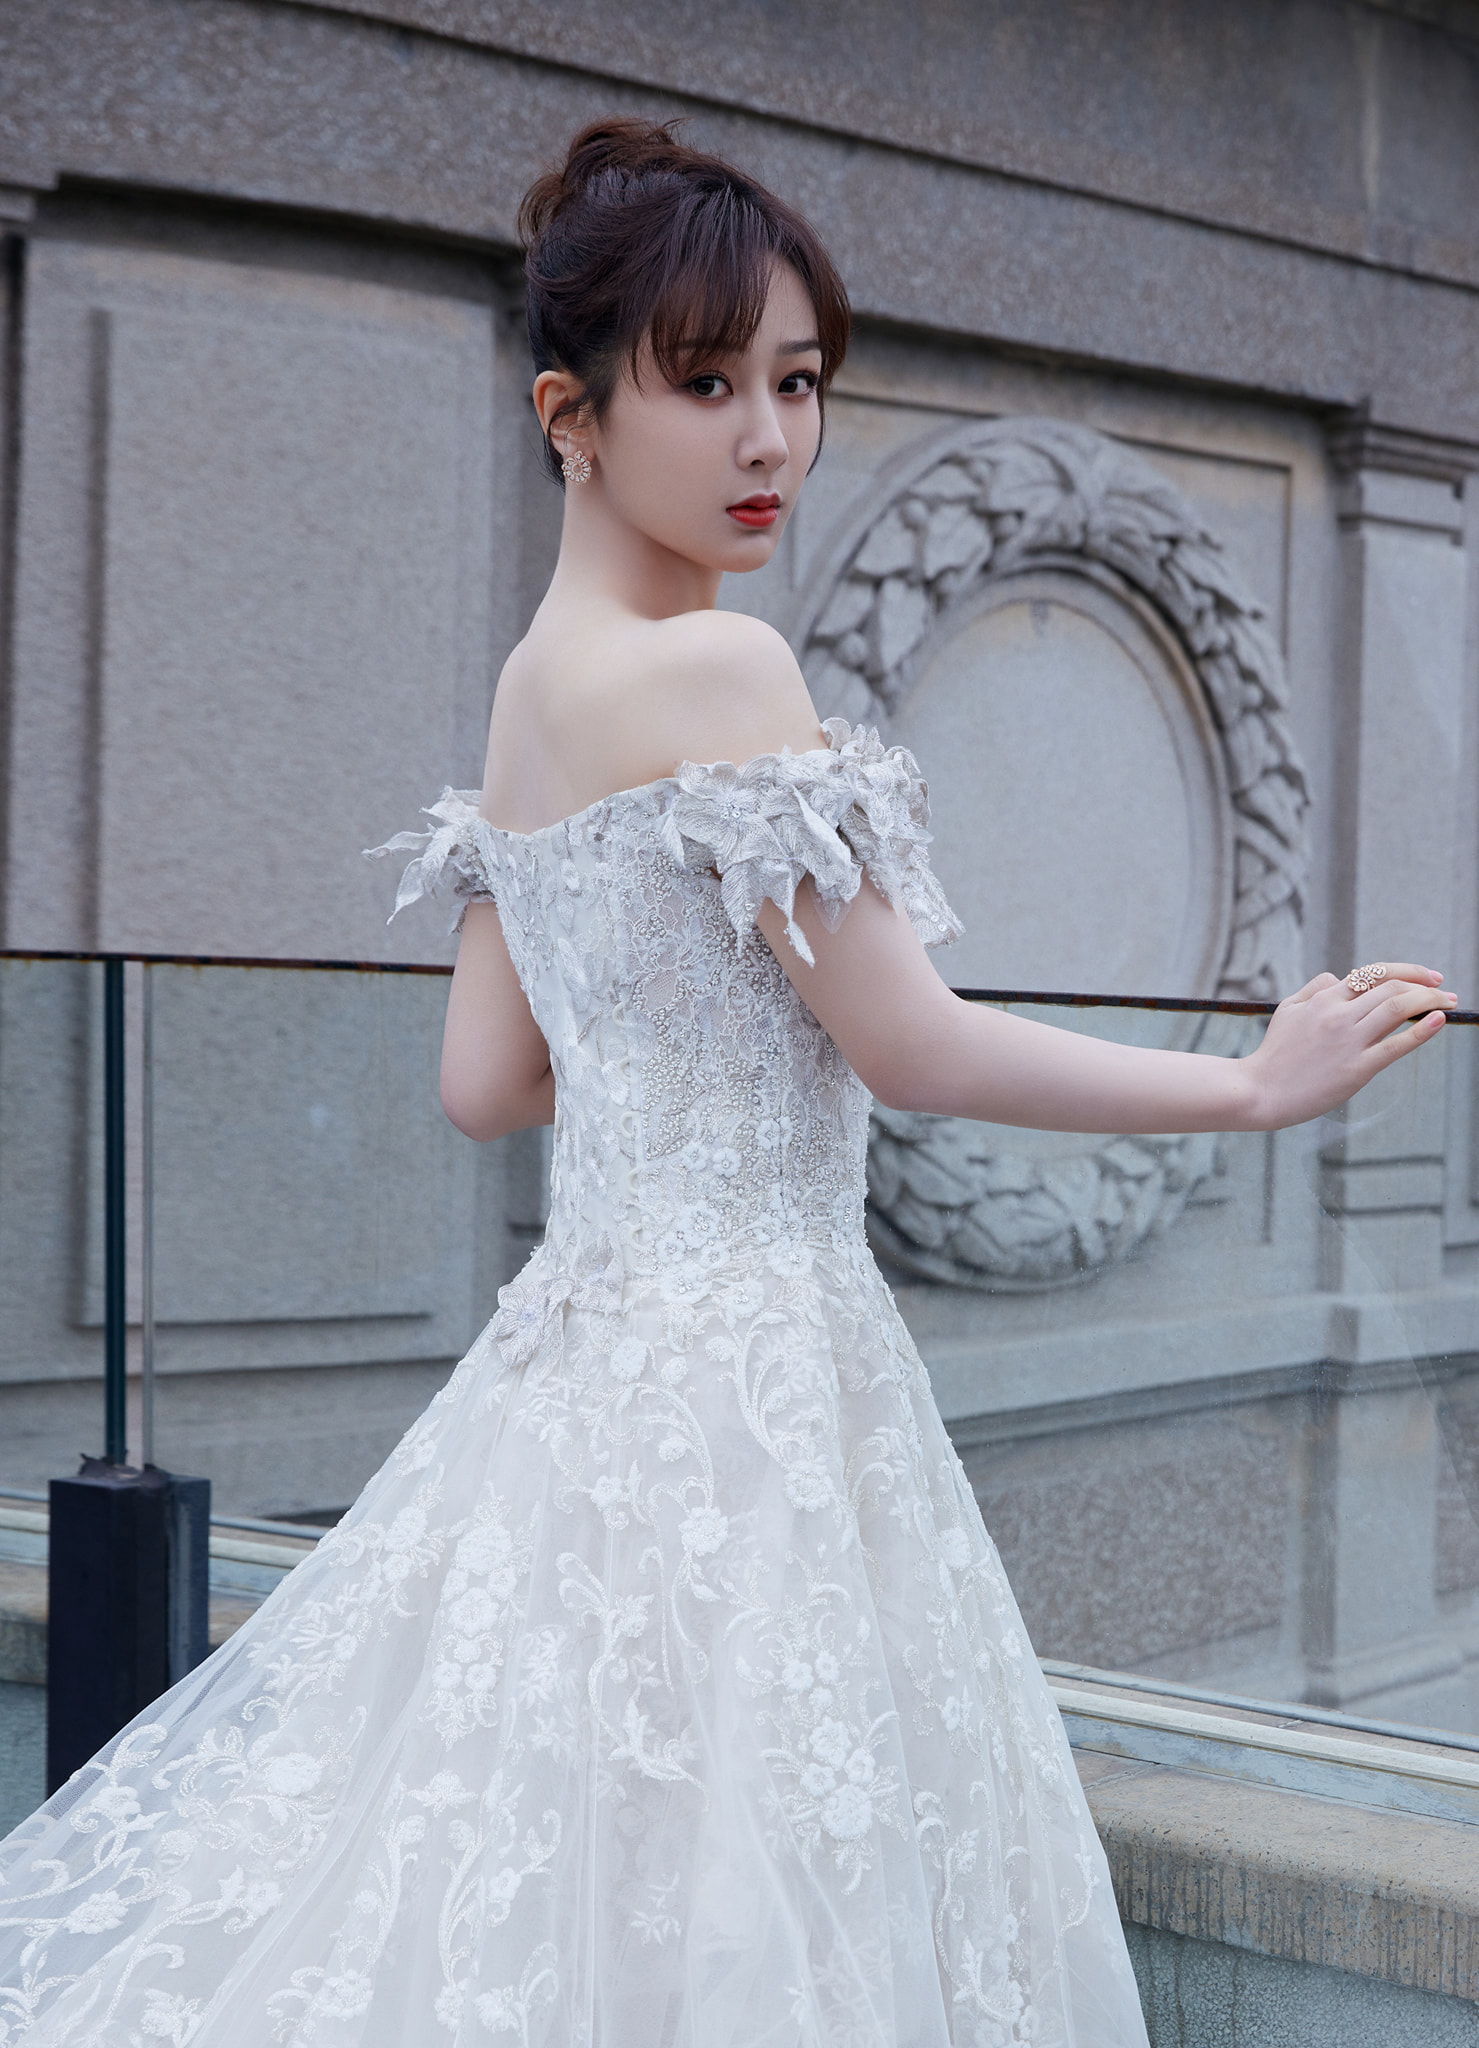 9 mỹ nhân Hoa ngữ diện váy cưới khiến phụ nữ cũng phải rung động, đàn ông  